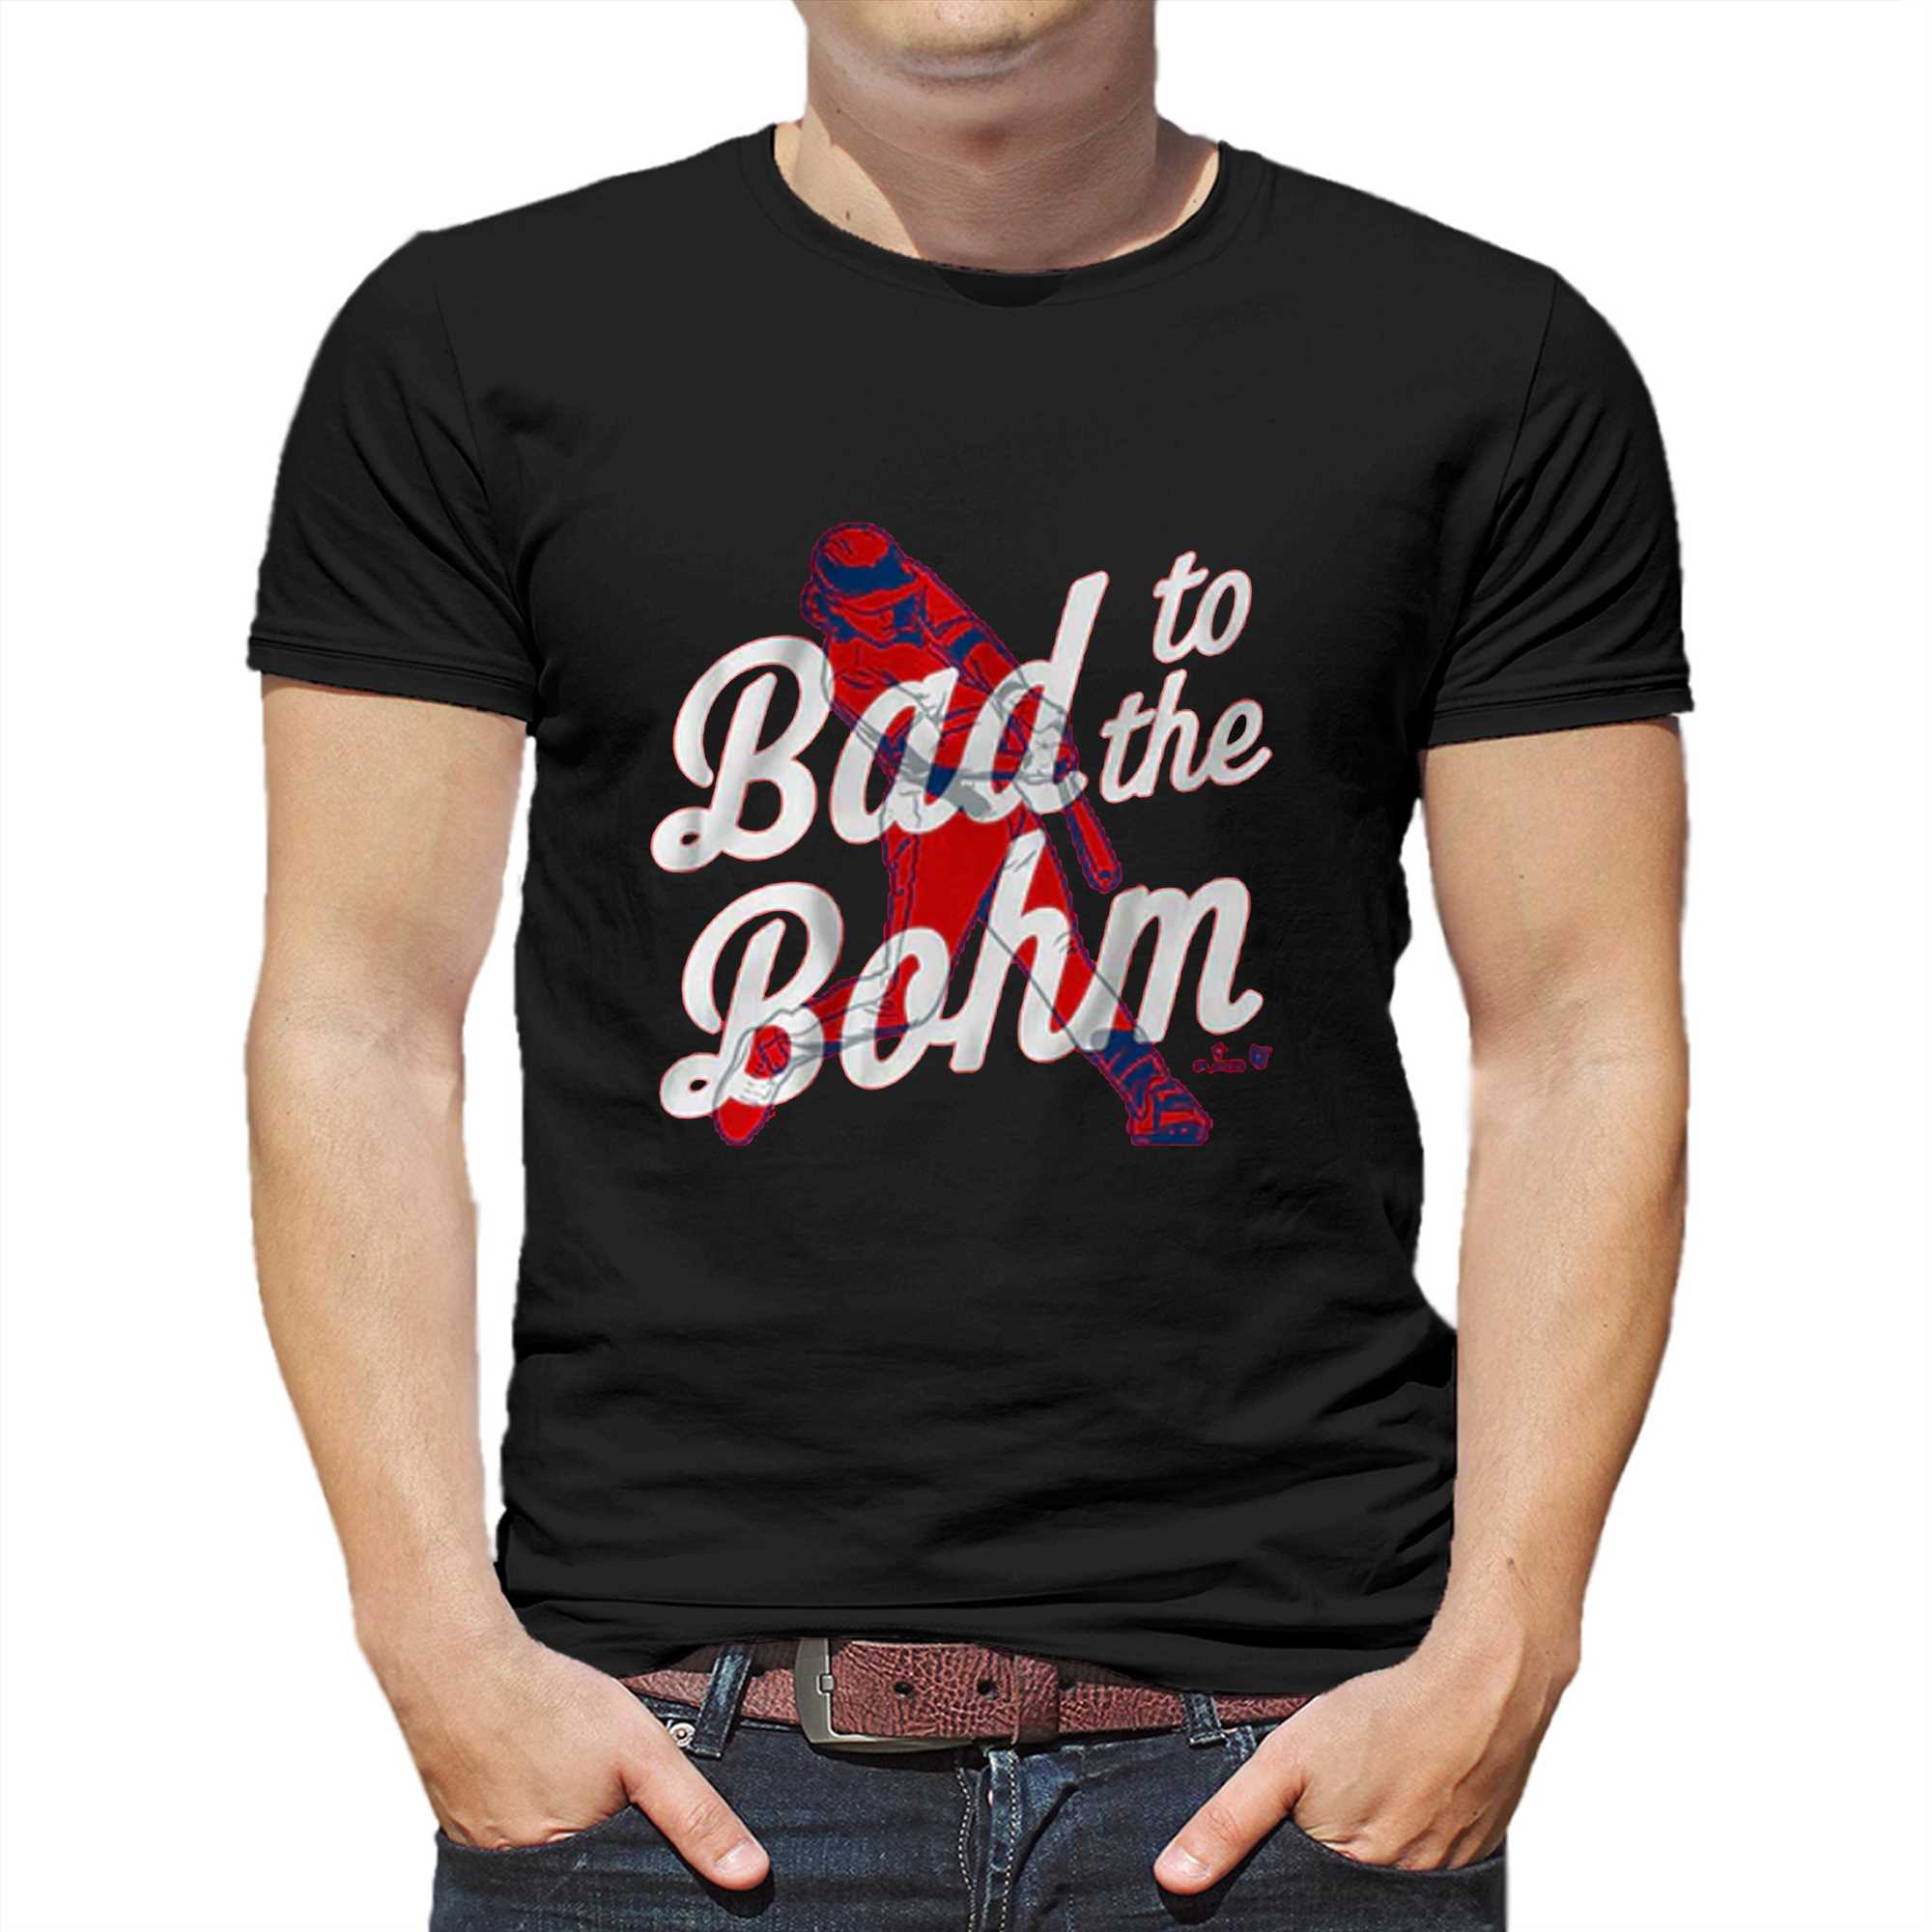 alec bohm shirt